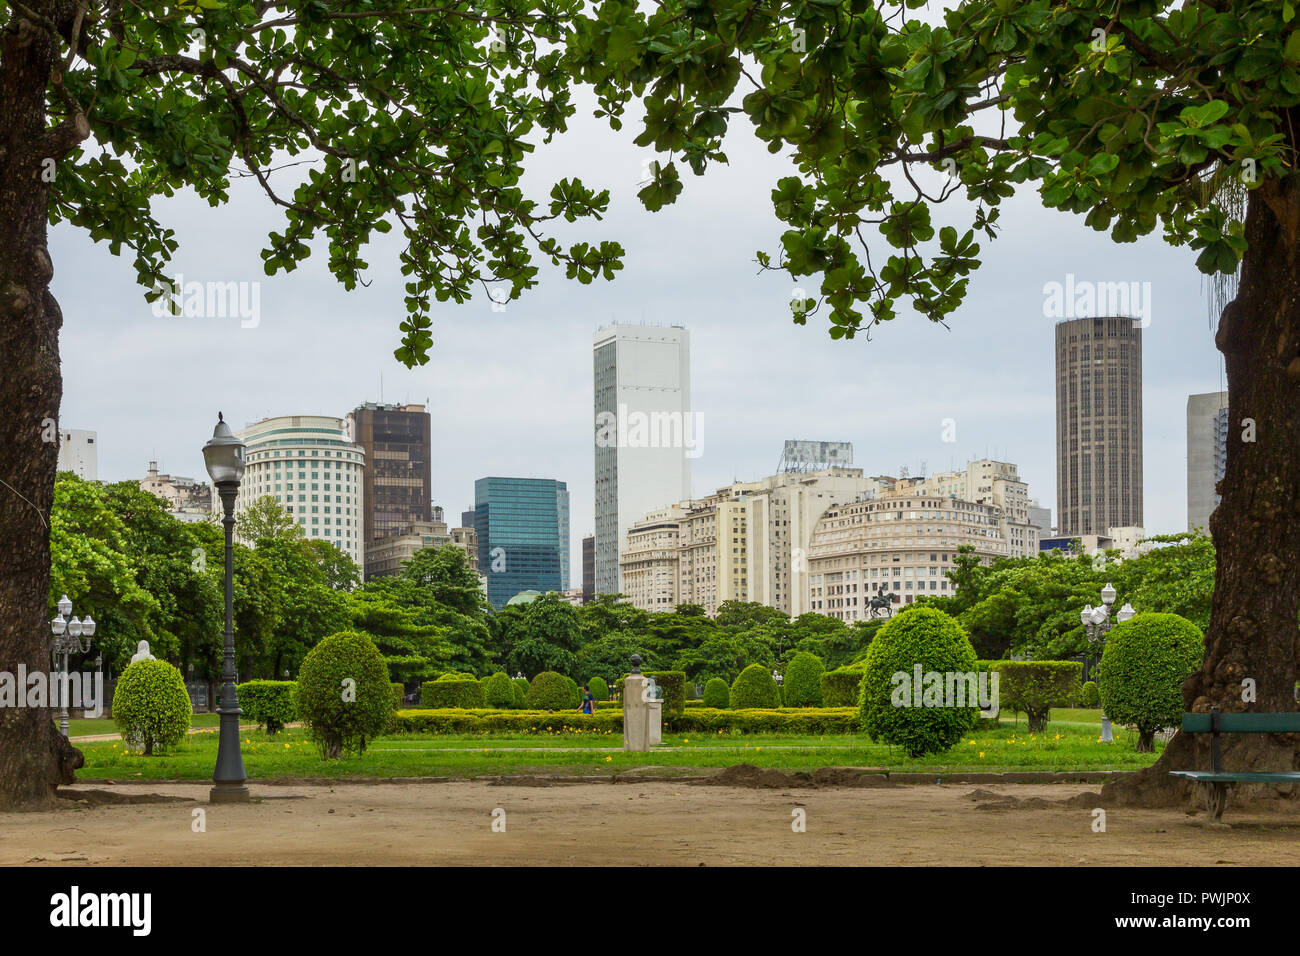 View from Paris Square to the city centre, Rio de Janeiro, Brazil, South America Stock Photo